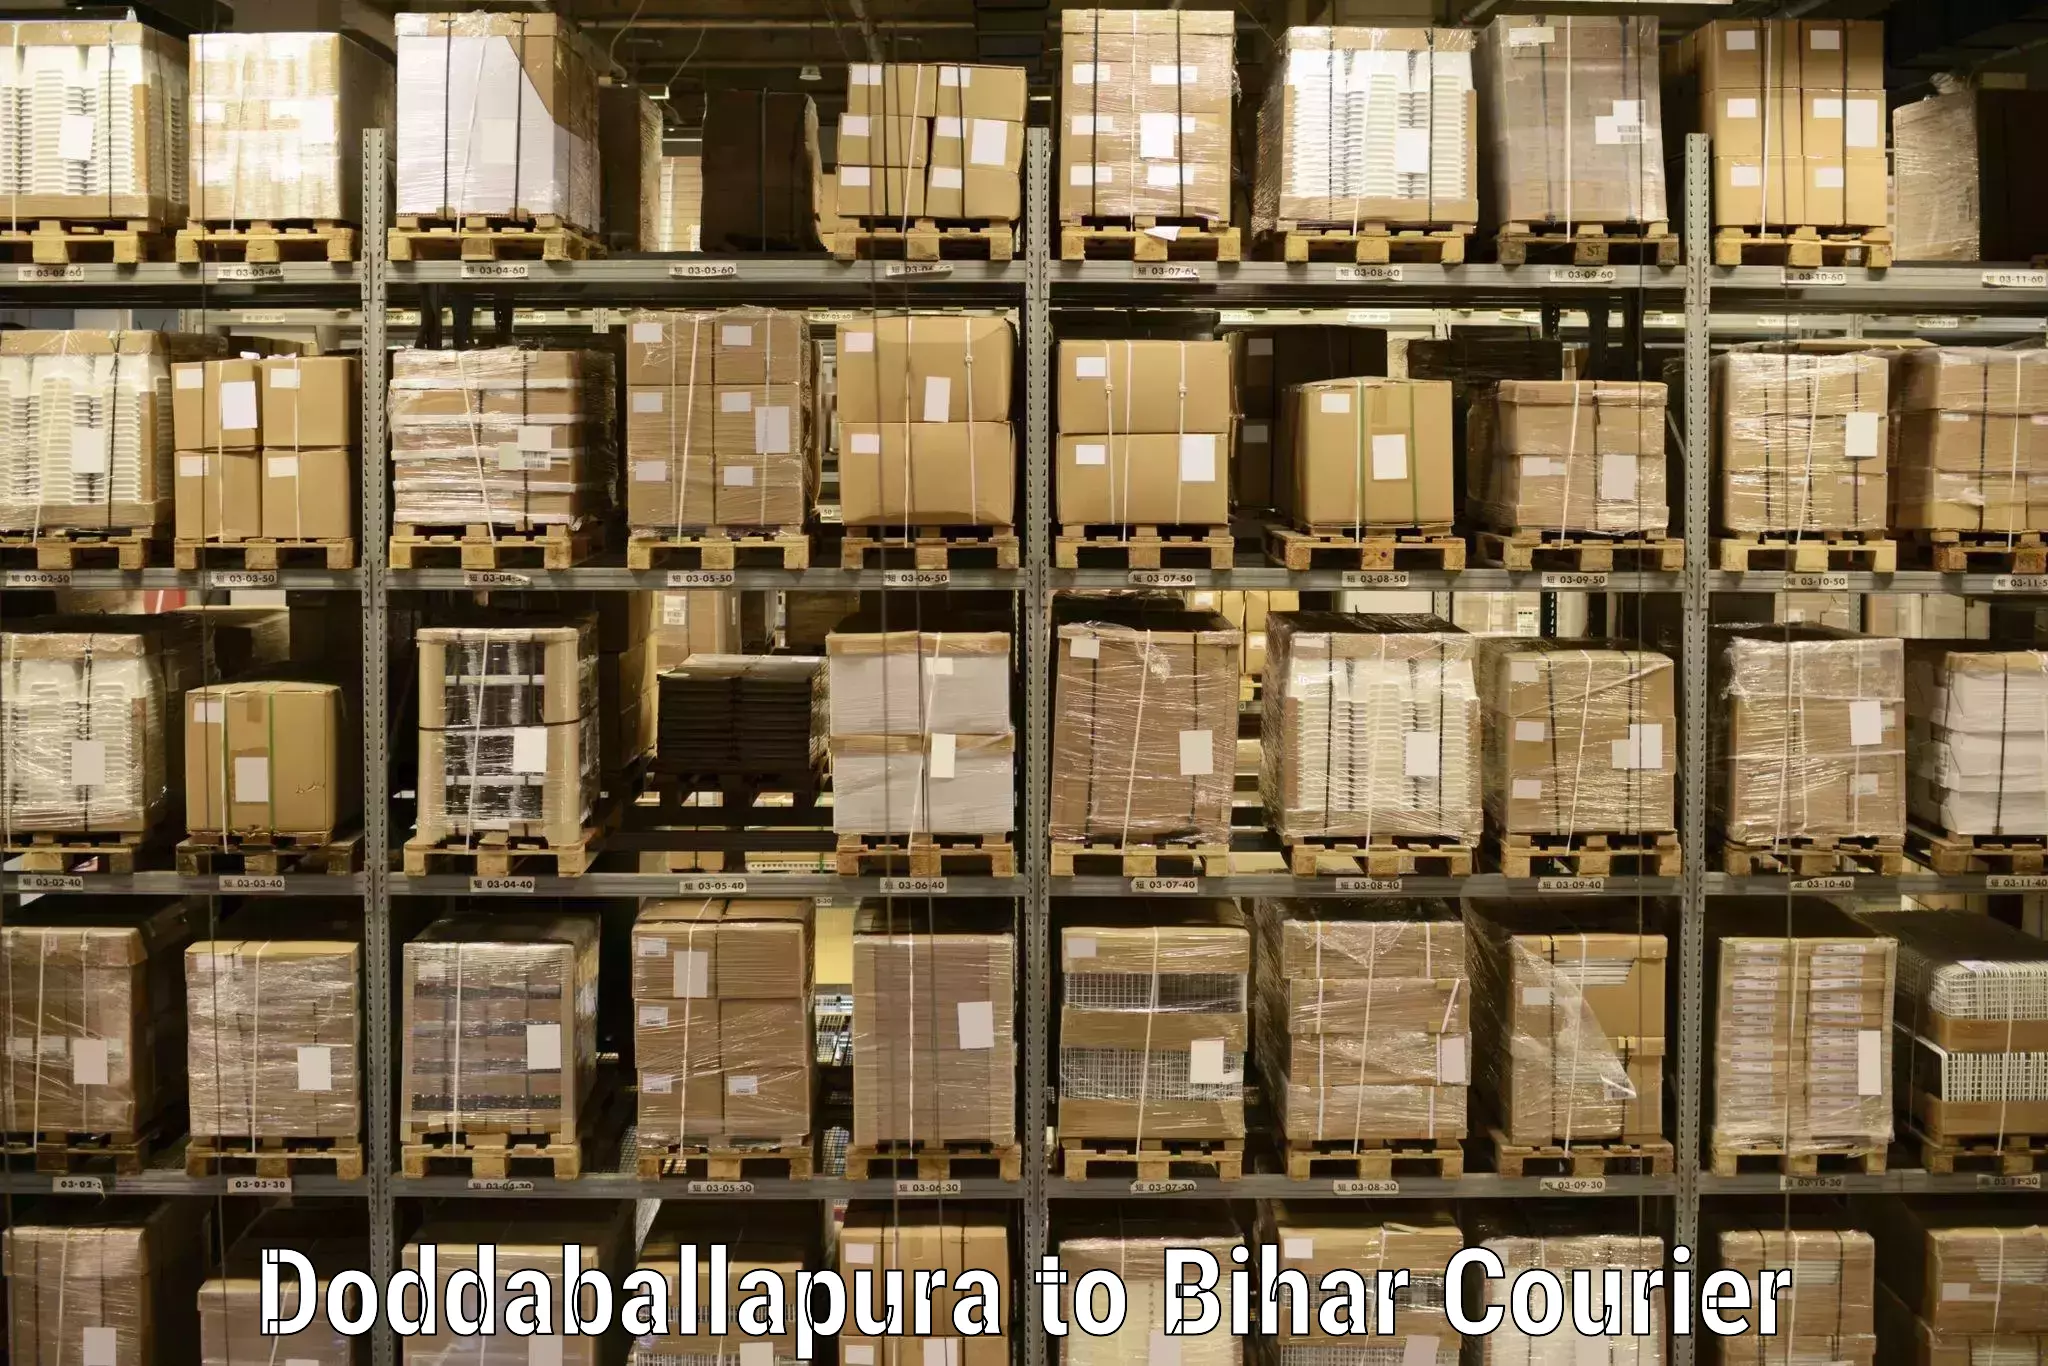 Online package tracking Doddaballapura to Bakhtiarpur